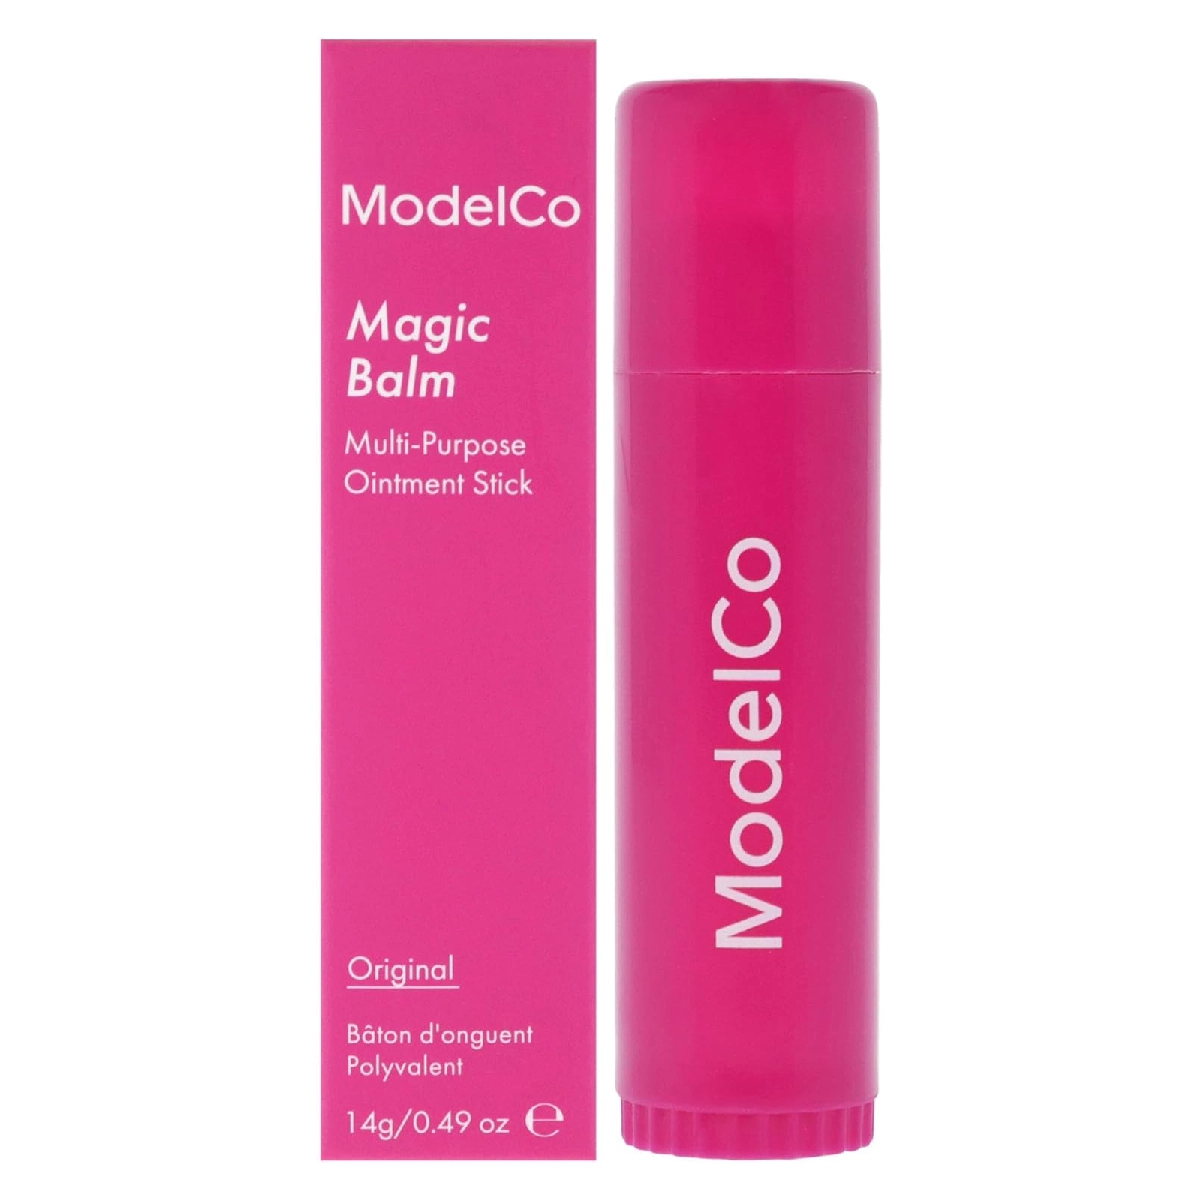 ModelCo Magic Balm - Original For Women 0.49 oz Lip Balm in pink packaging